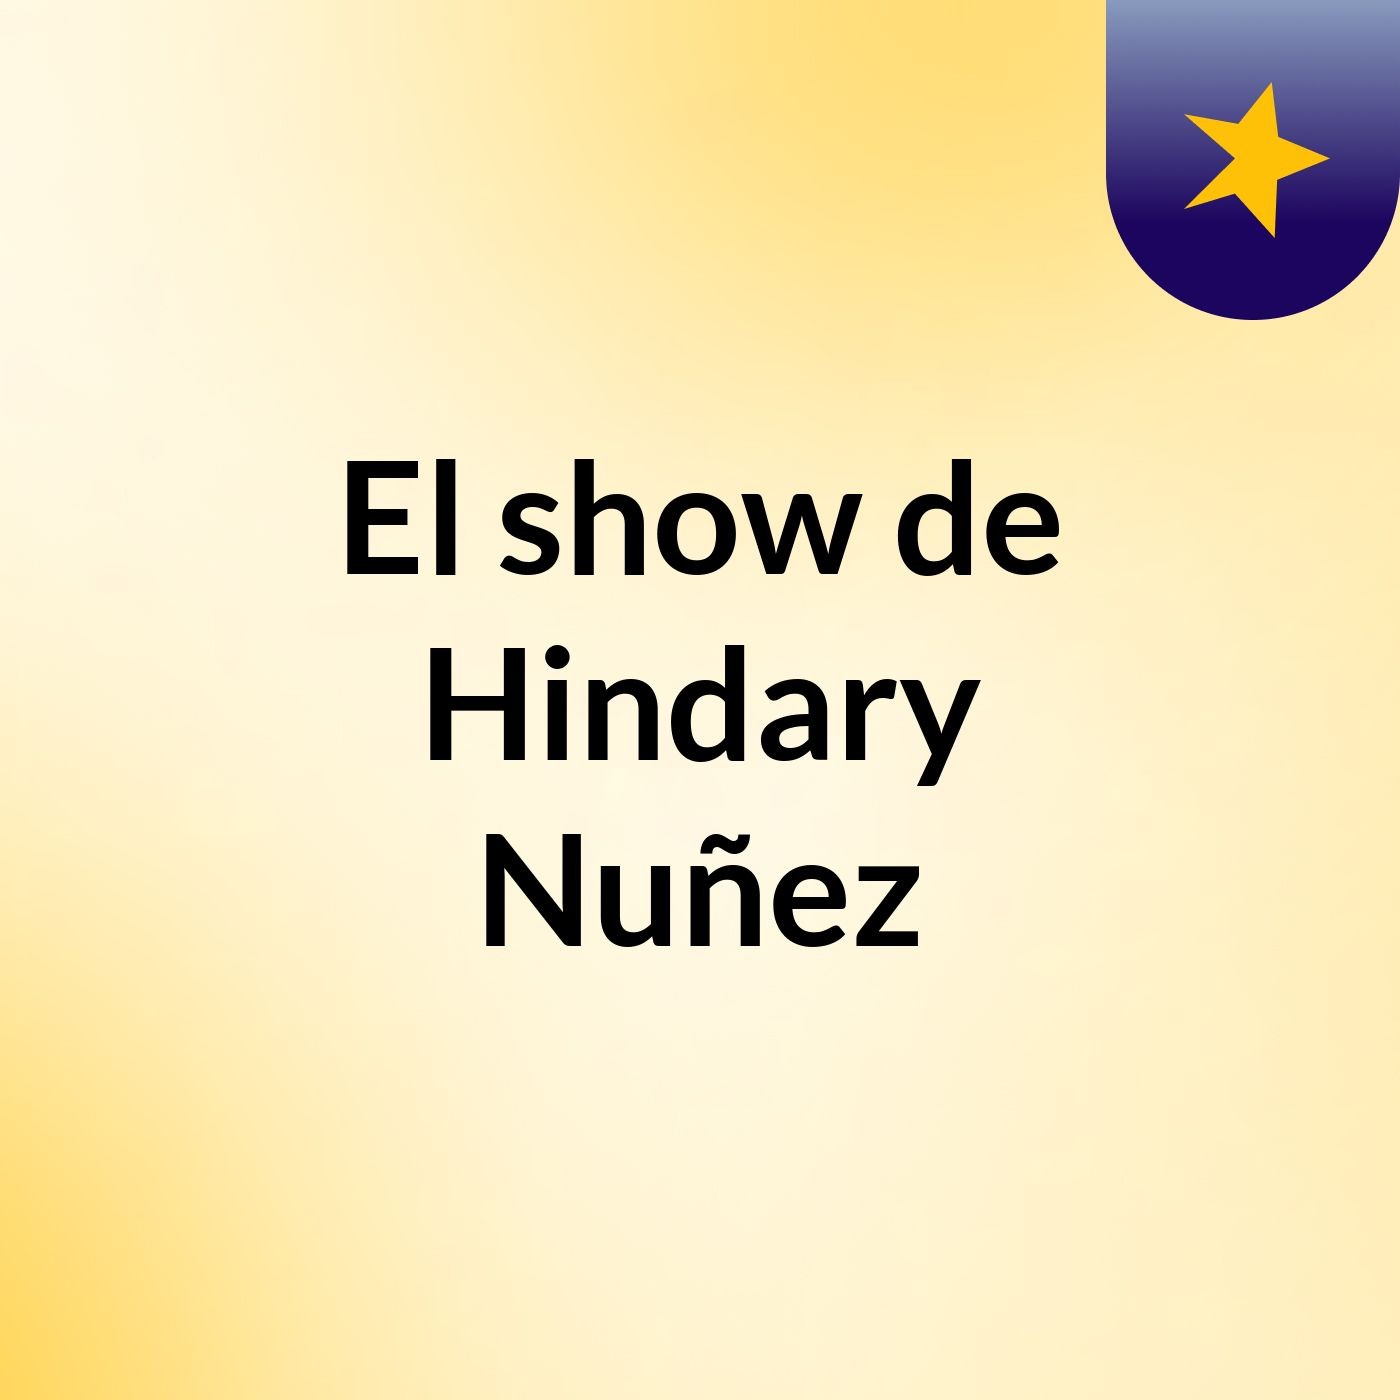 El show de Hindary Nuñez